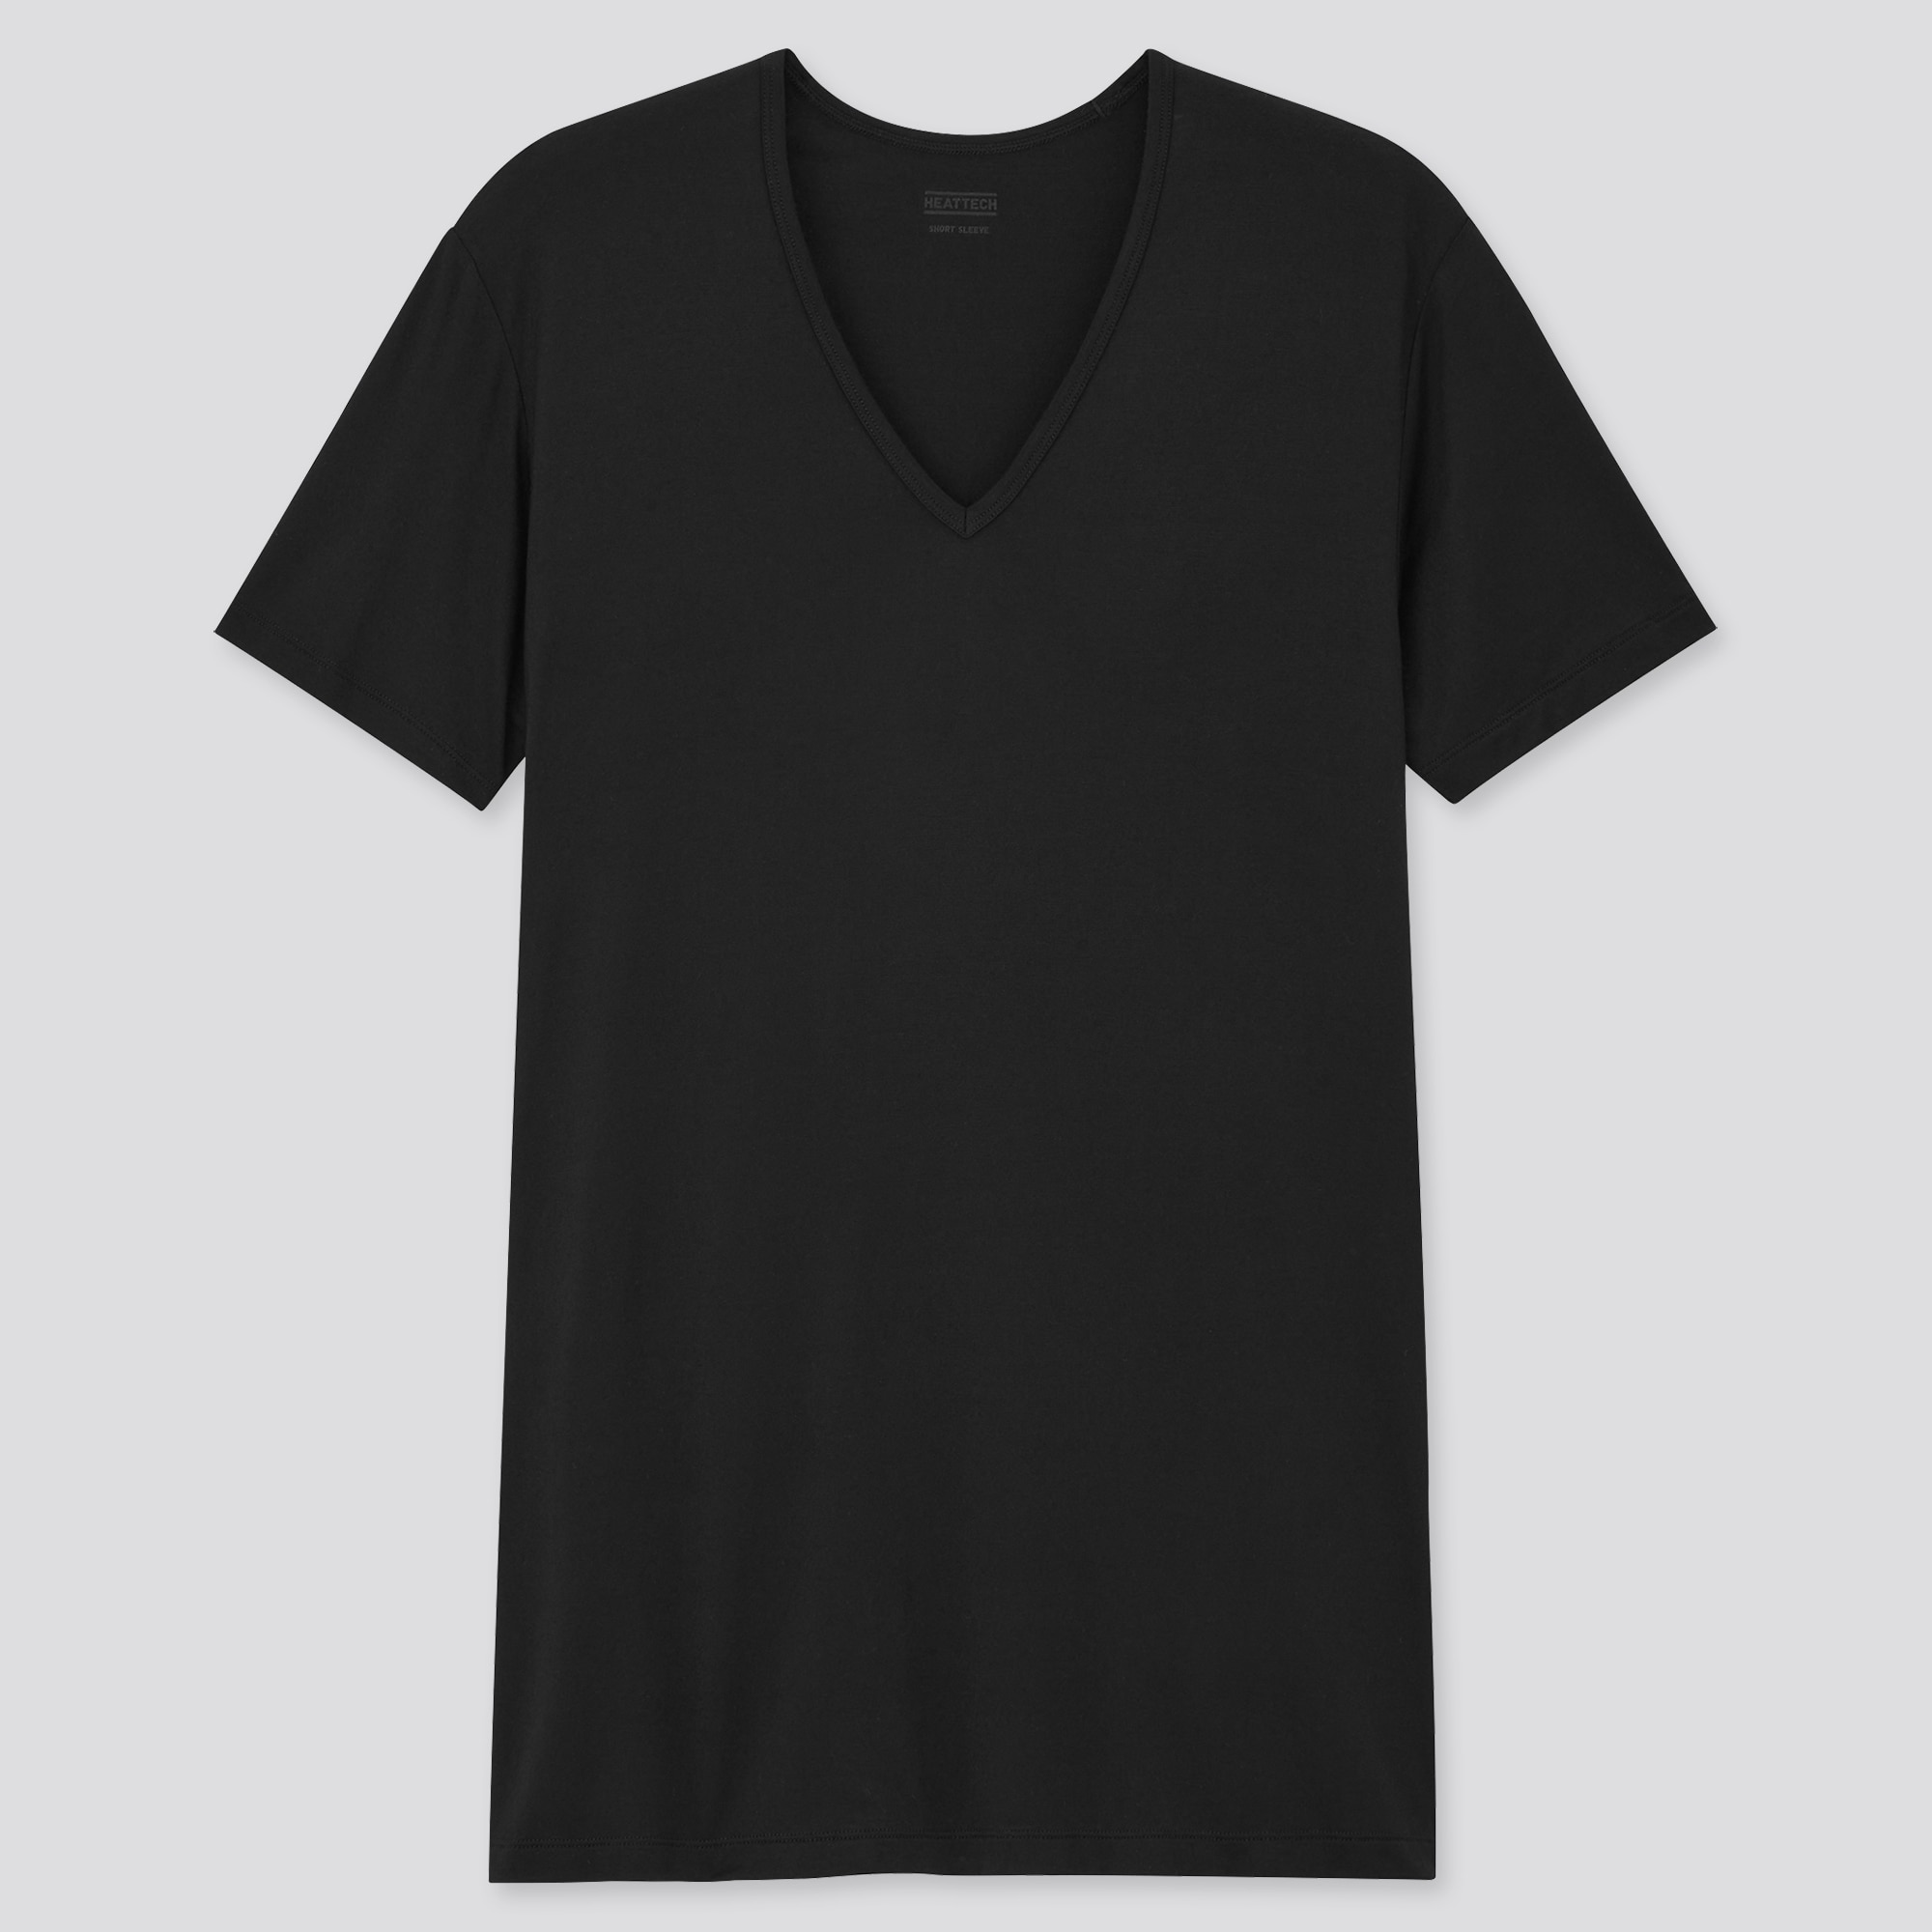 メンズ必見 透けないインナーシャツの厳選ブランド3選 社会人から就活生まで 共通のインナーシャツマナーも解説します 紳士のシャツ